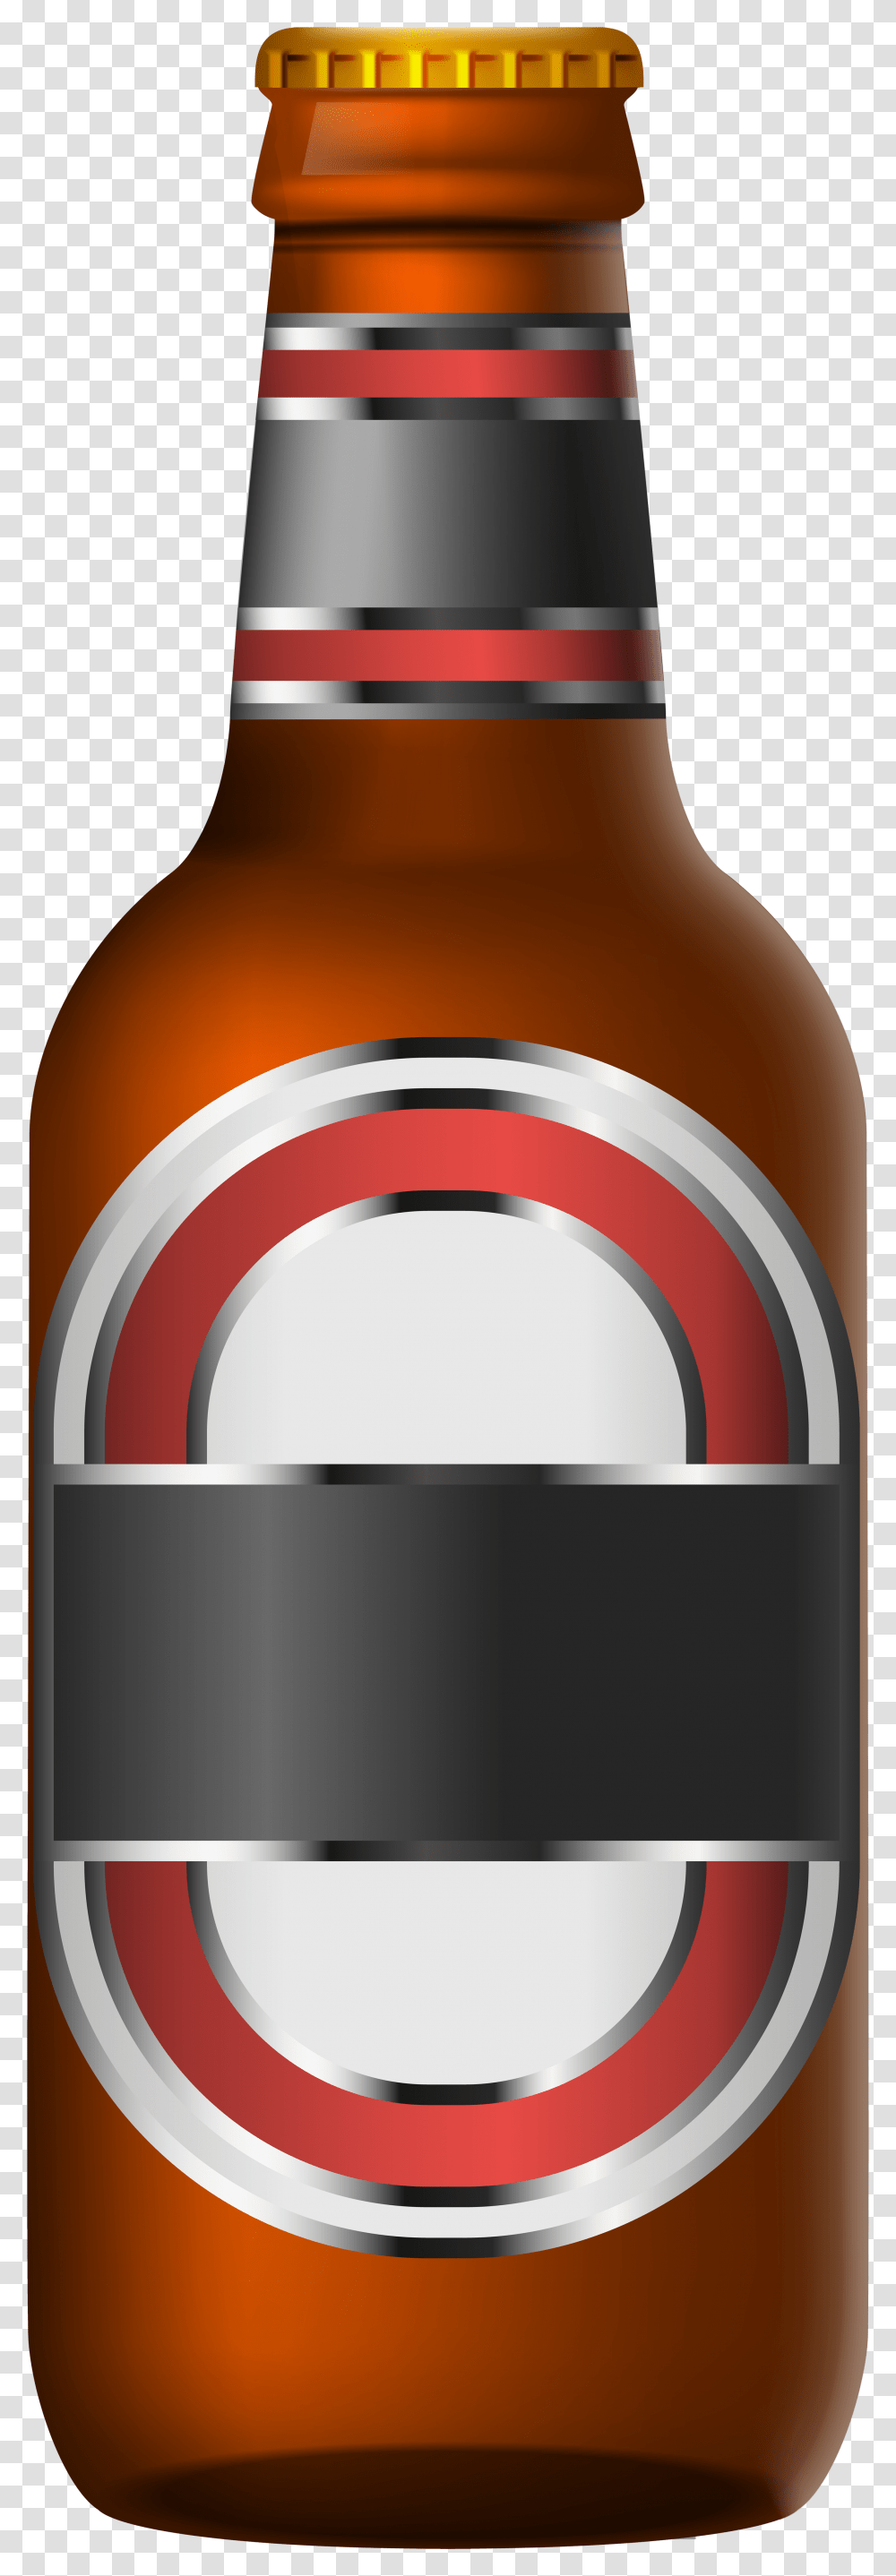 Beer Bottle Beer Bottle Clip Art, Alcohol, Beverage, Drink, Wine Transparent Png